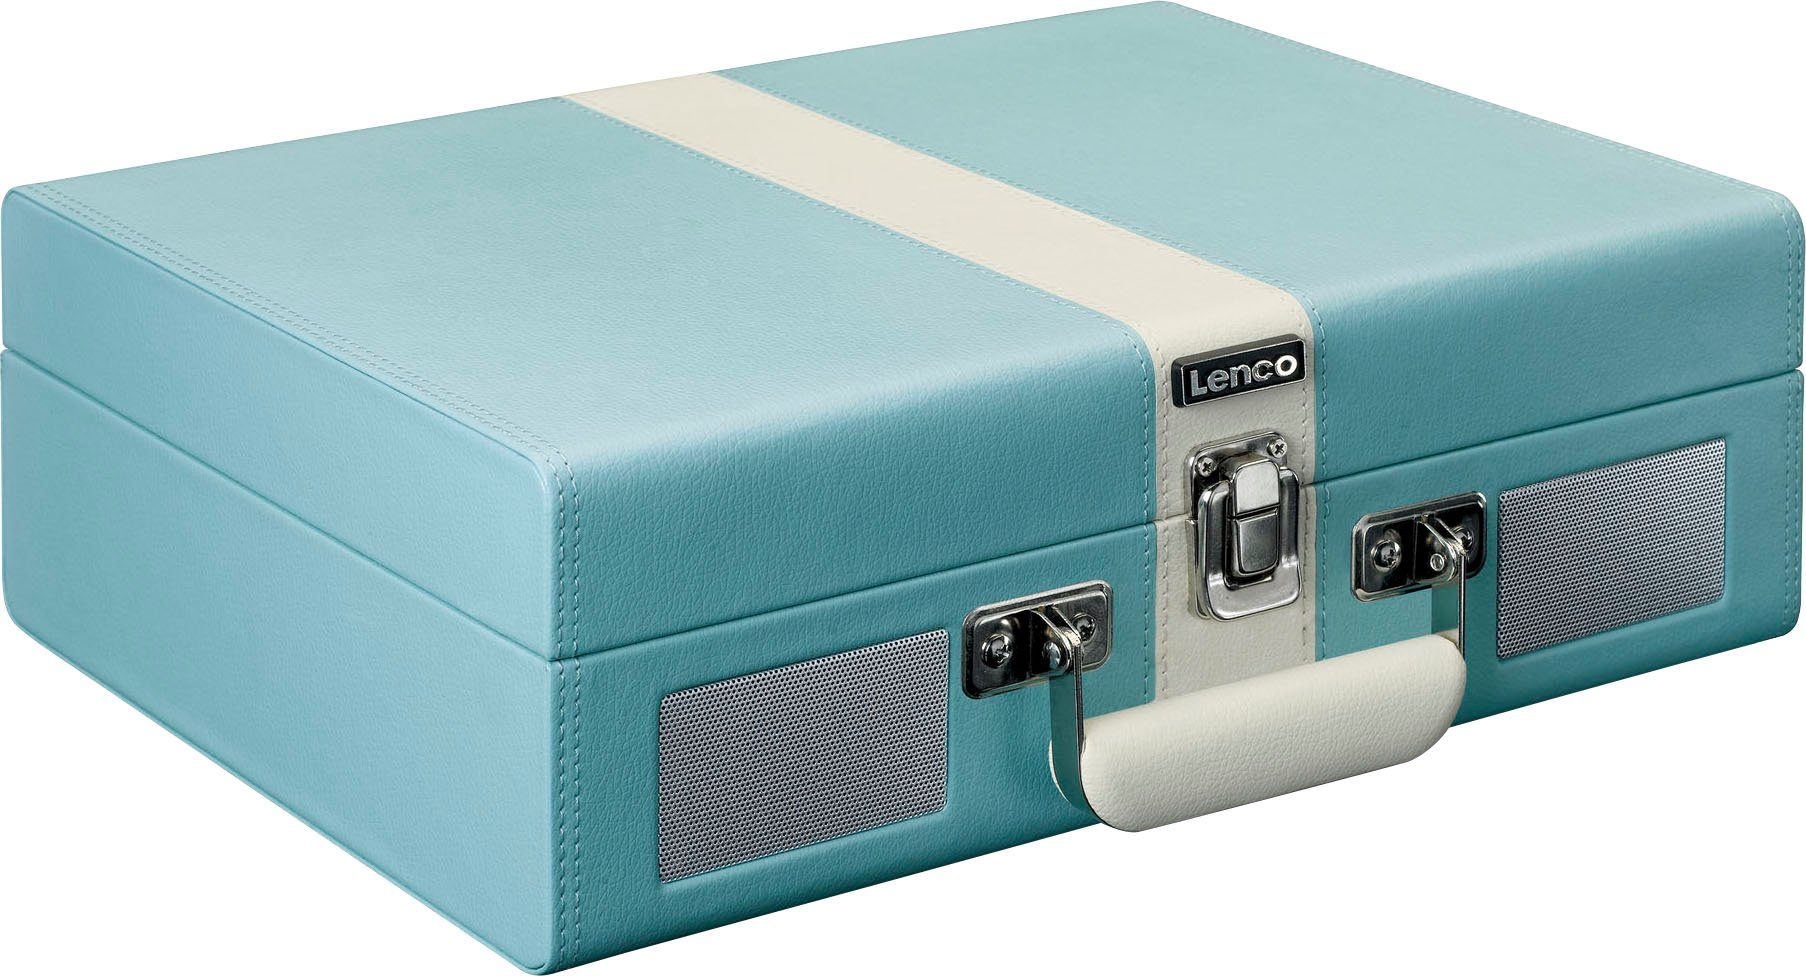 Lenco Koffer-Plattenspieler mit BT und eingebauten Lsp. Plattenspieler (Riemenantrieb) Blau-Weiß | Plattenspieler